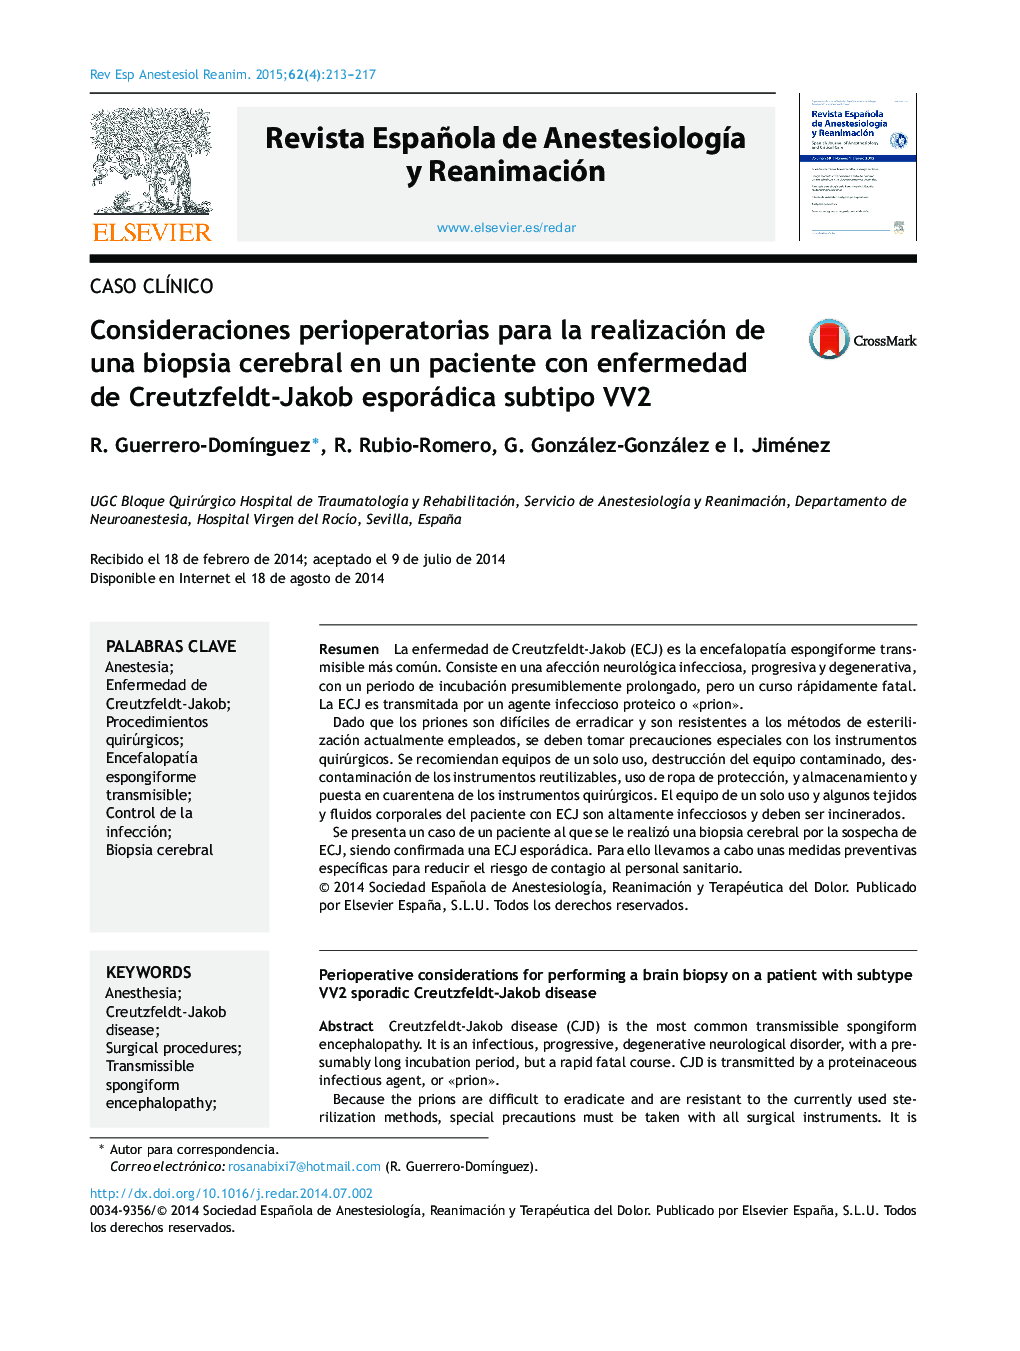 Consideraciones perioperatorias para la realización de una biopsia cerebral en un paciente con enfermedad de Creutzfeldt-Jakob esporádica subtipo VV2